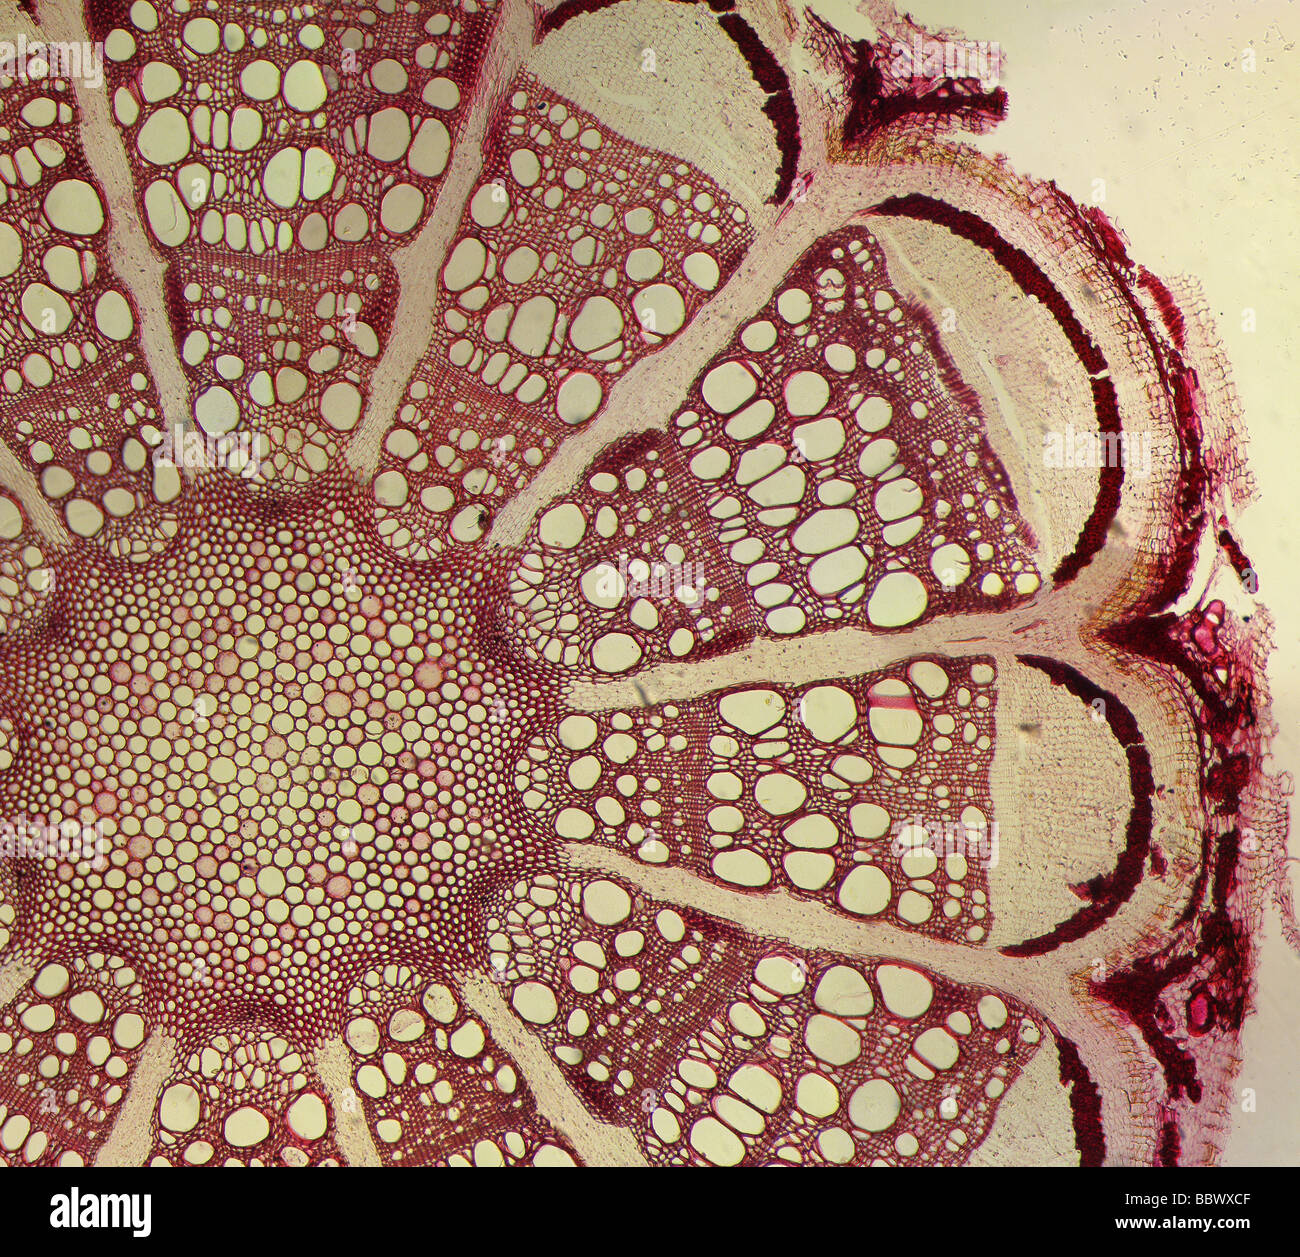 Abb. einer gefärbten Clematis Pflanze stammen Querschnitt Folie durch ein Mikroskop Stockfoto